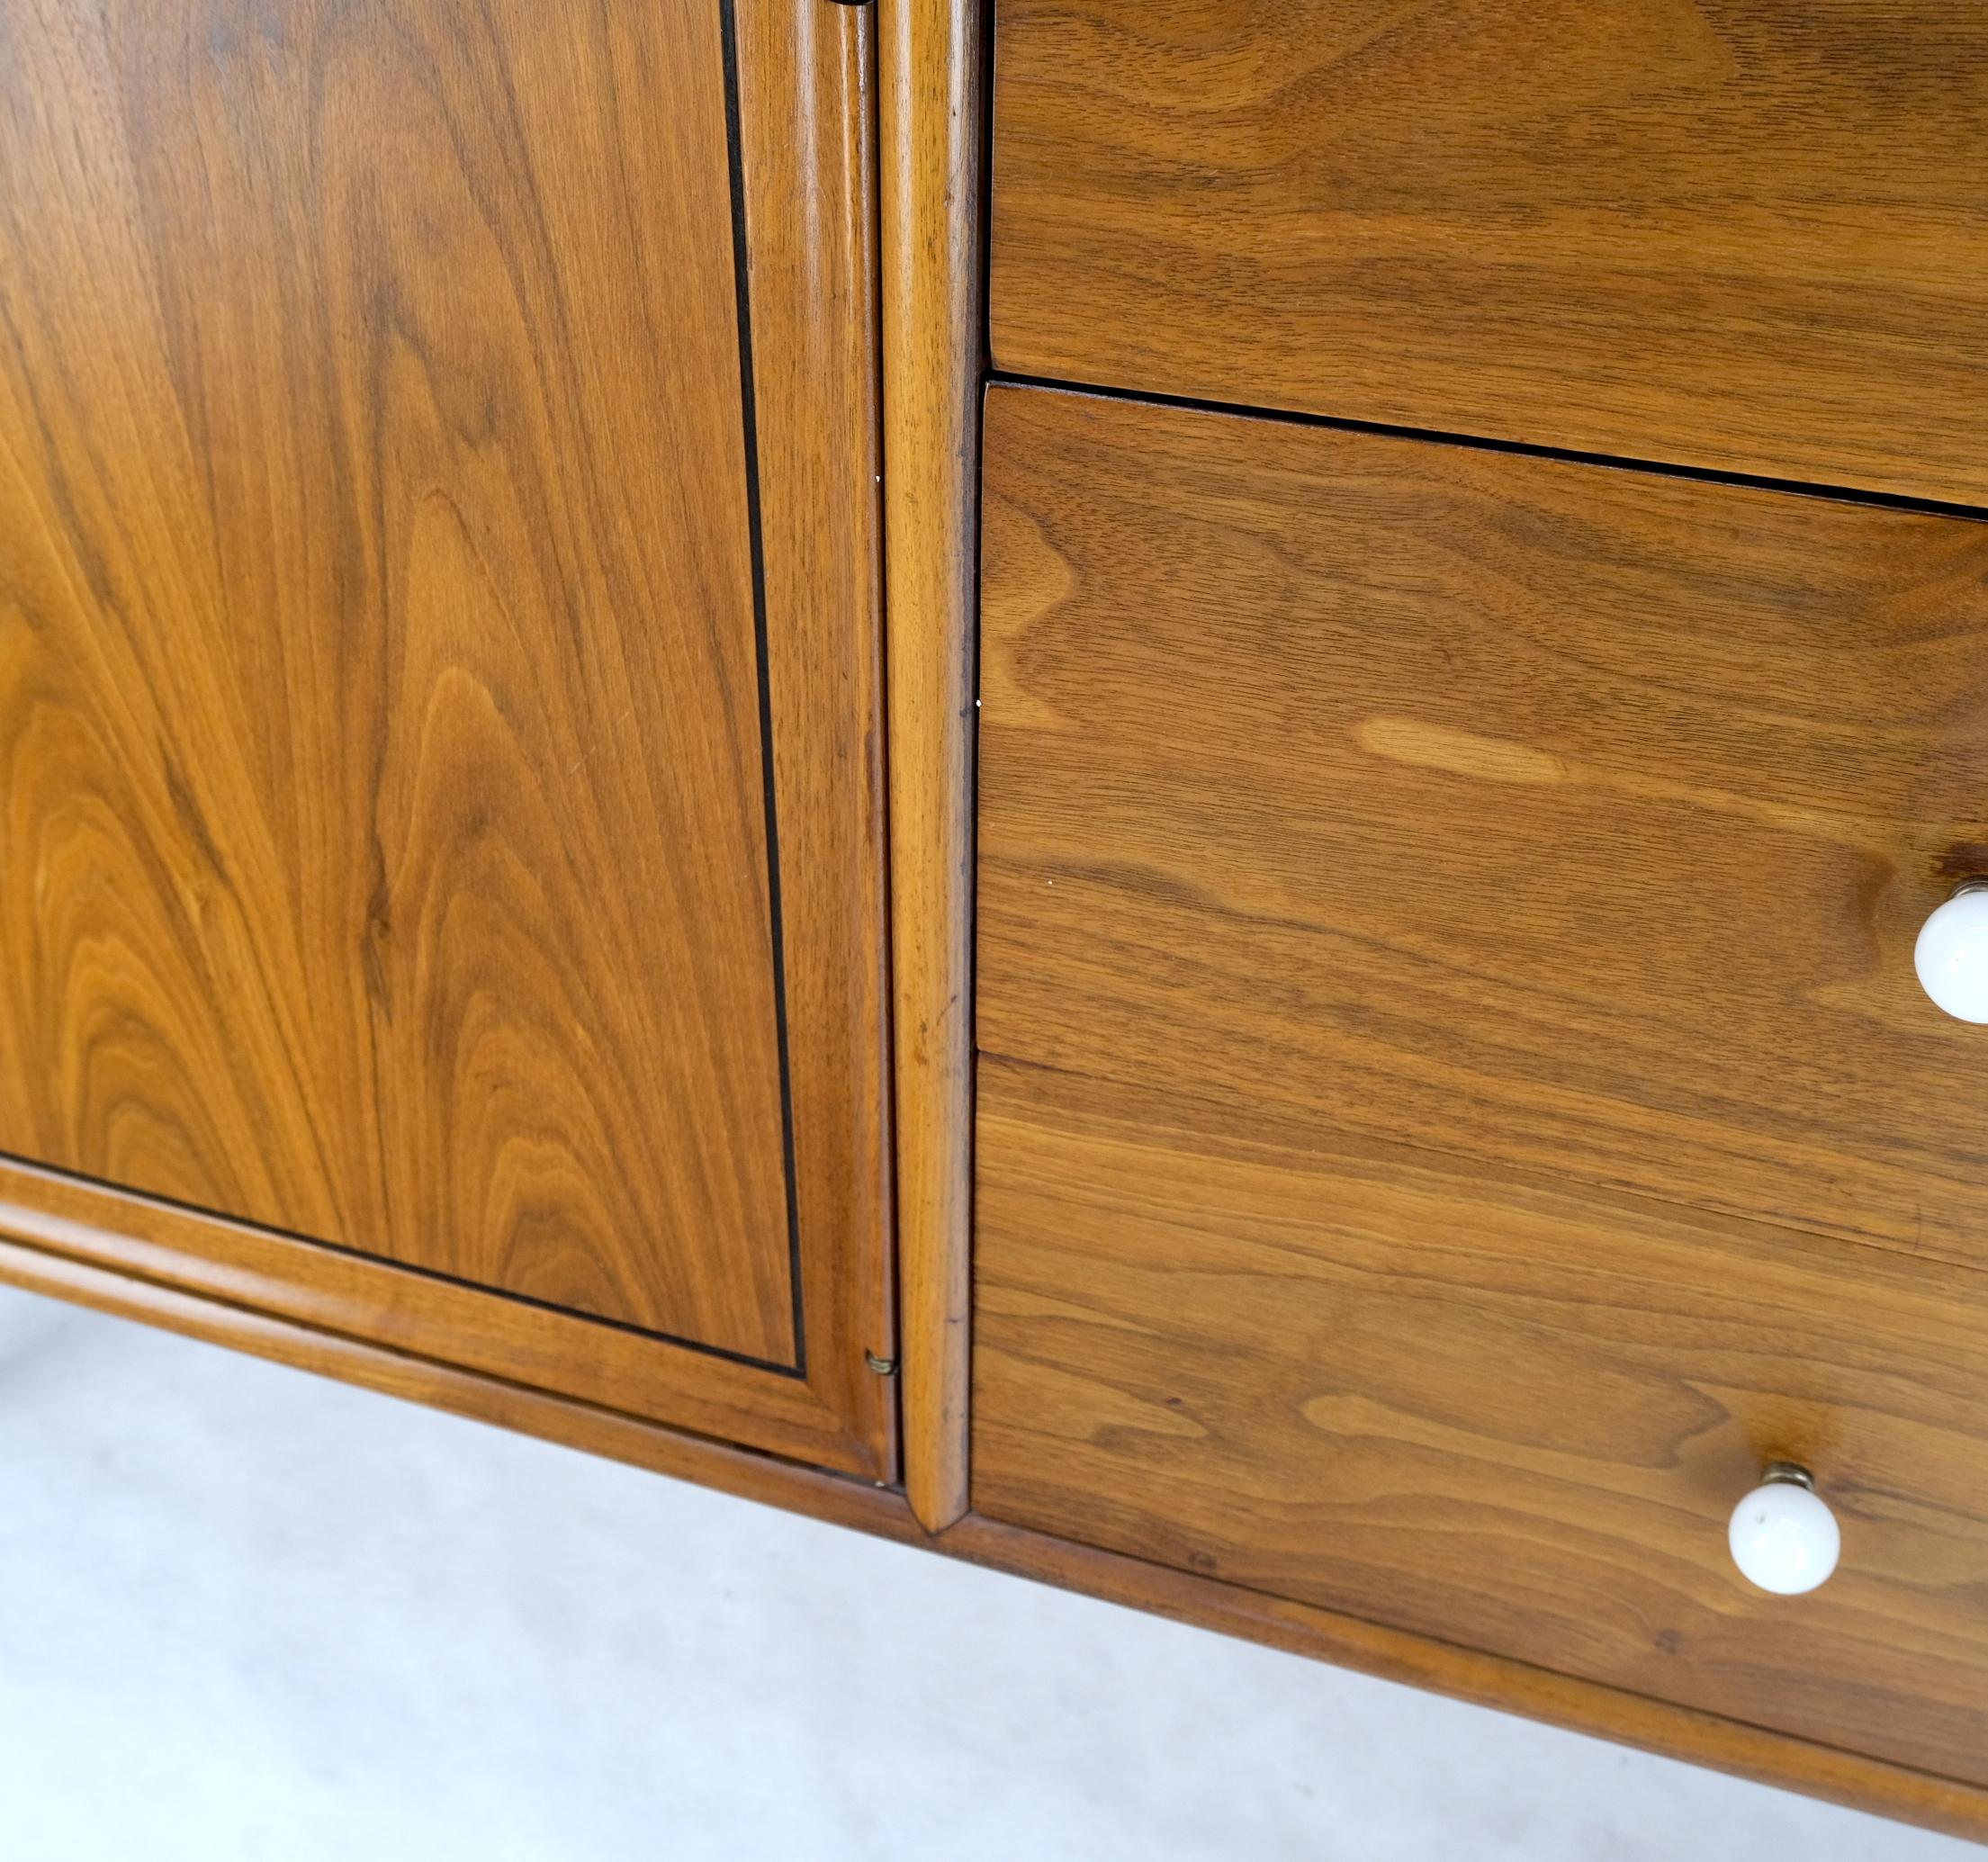 Teak Long Walnut 10 Drawers Drexel Credenza Dresser Server Cabinet Porcelain Pulls